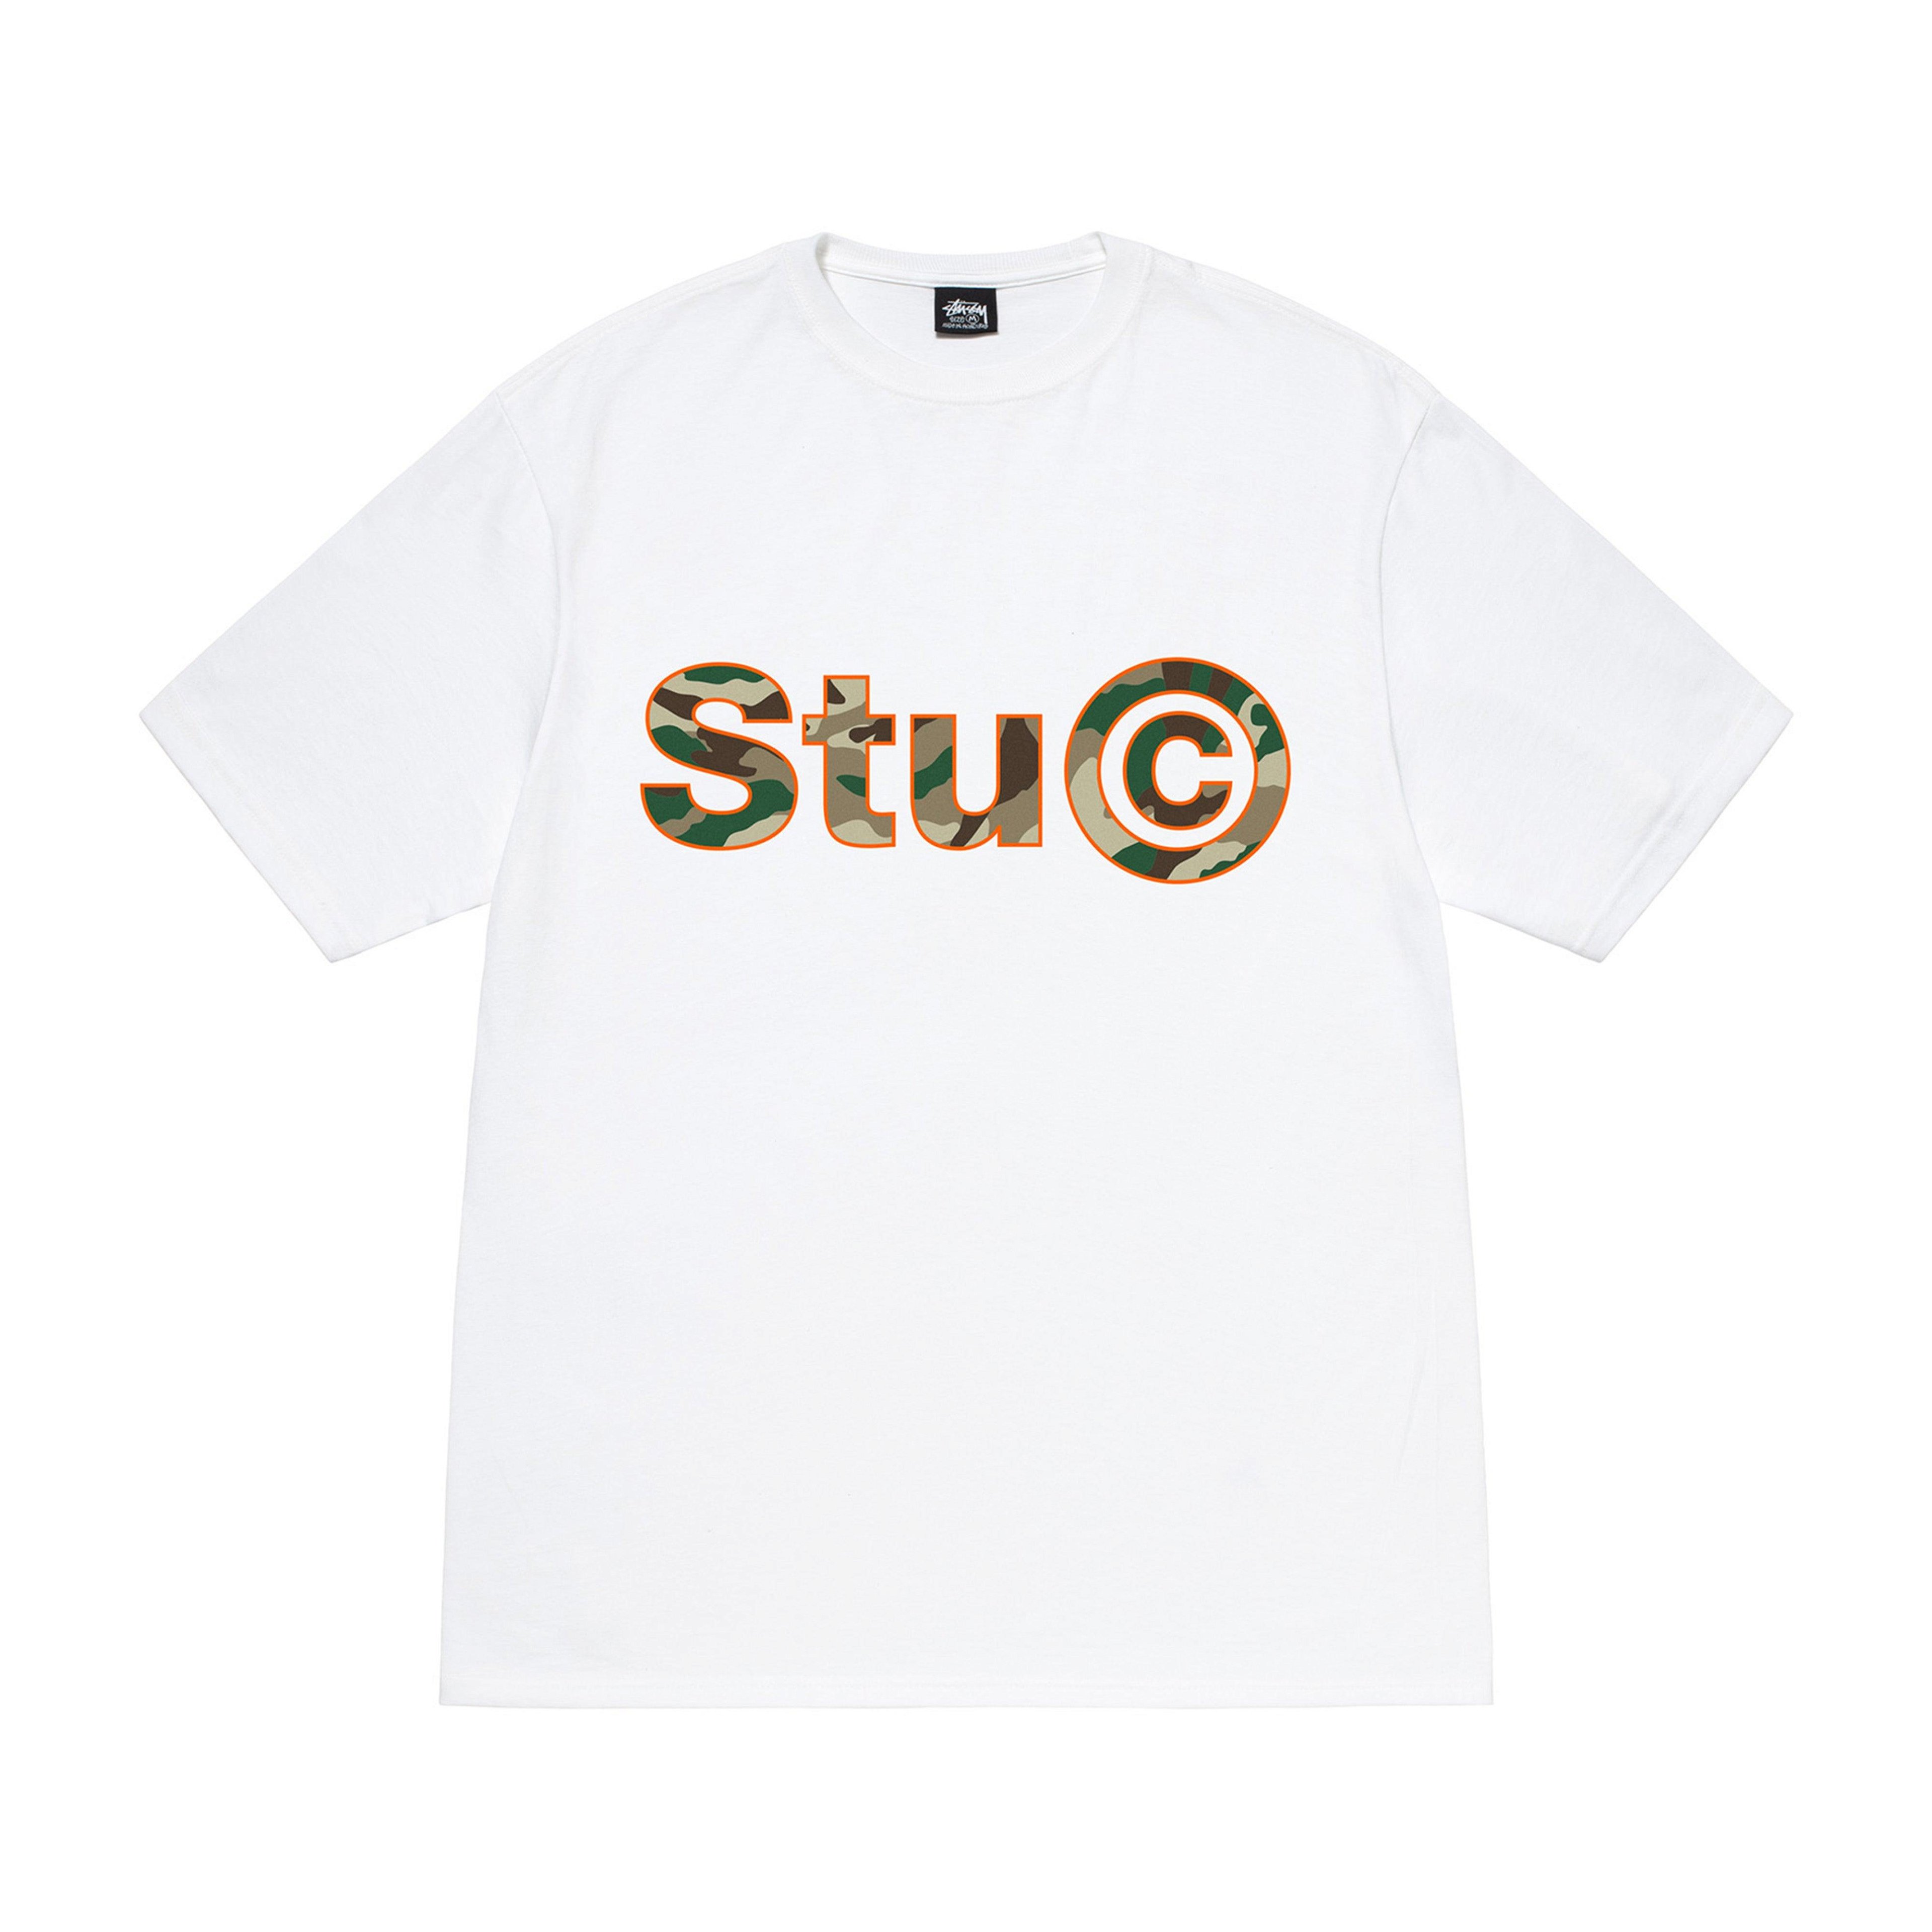 Stüssy - Stu C. Camo Tee - (White) by STUSSY